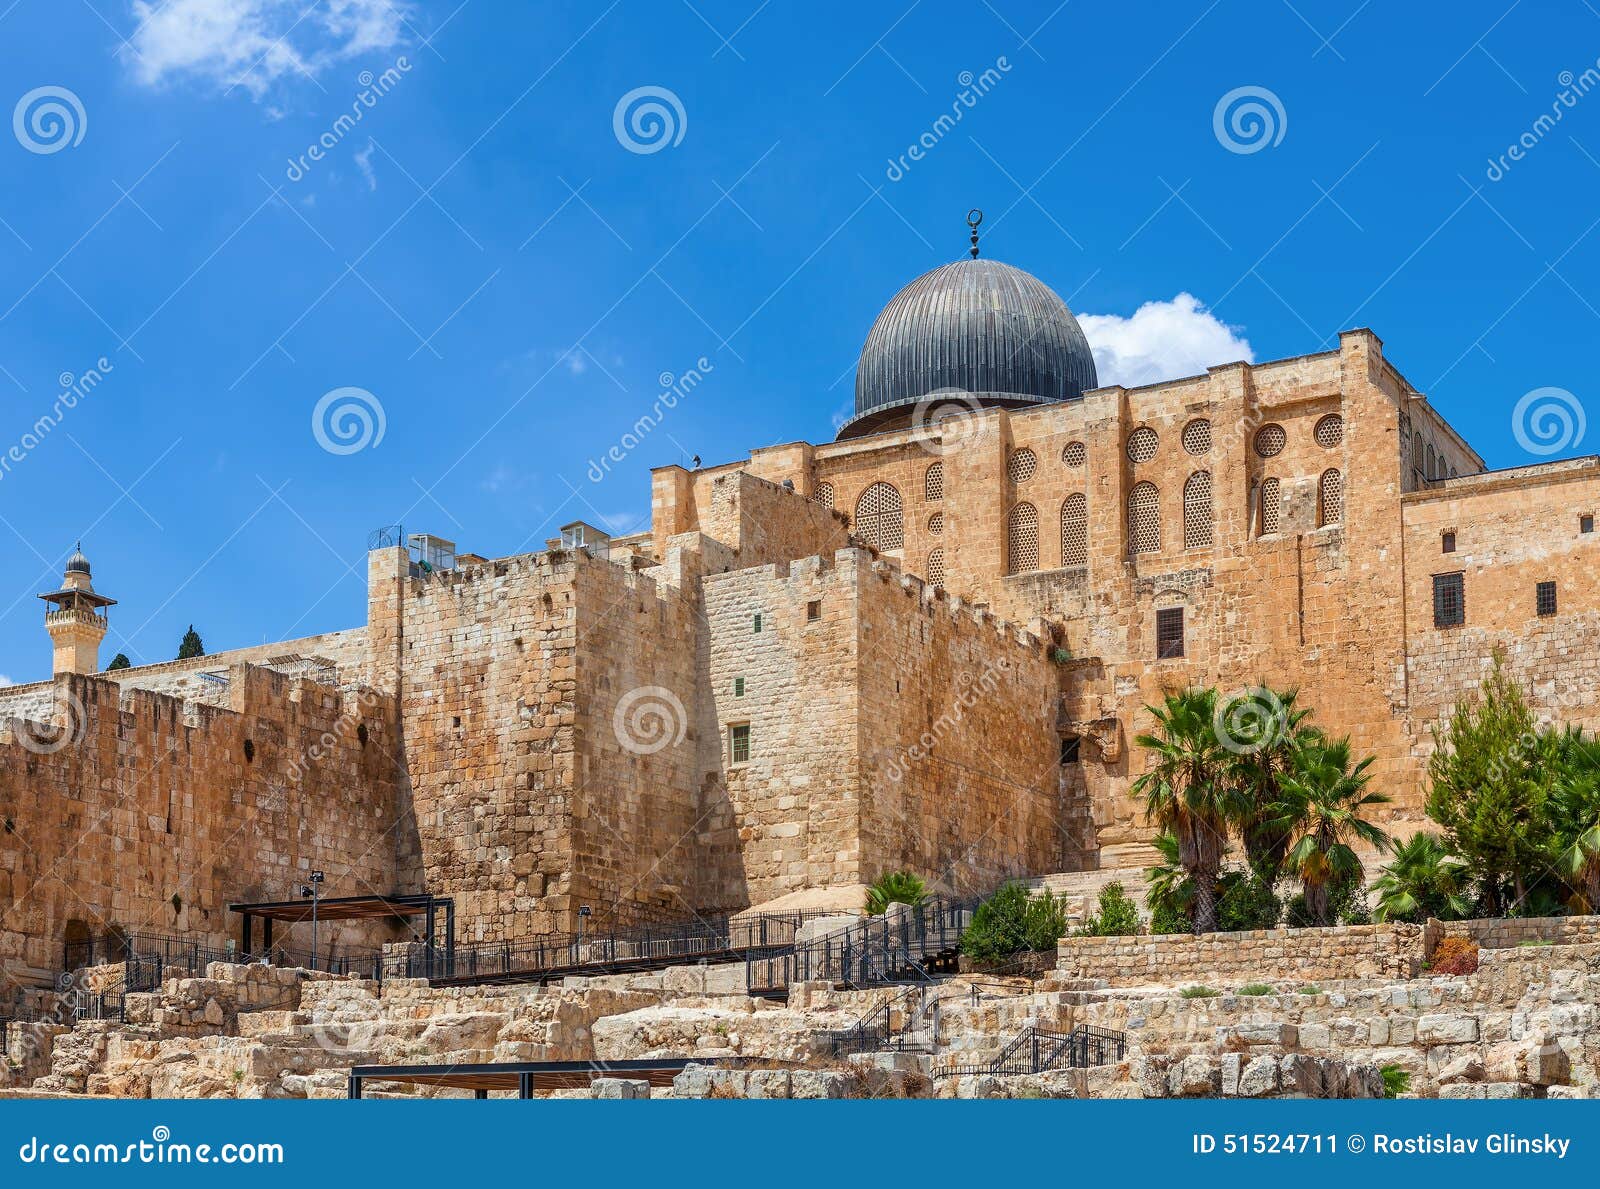 ancient walls and al aqsa mosque dome in jerusalem, israel.